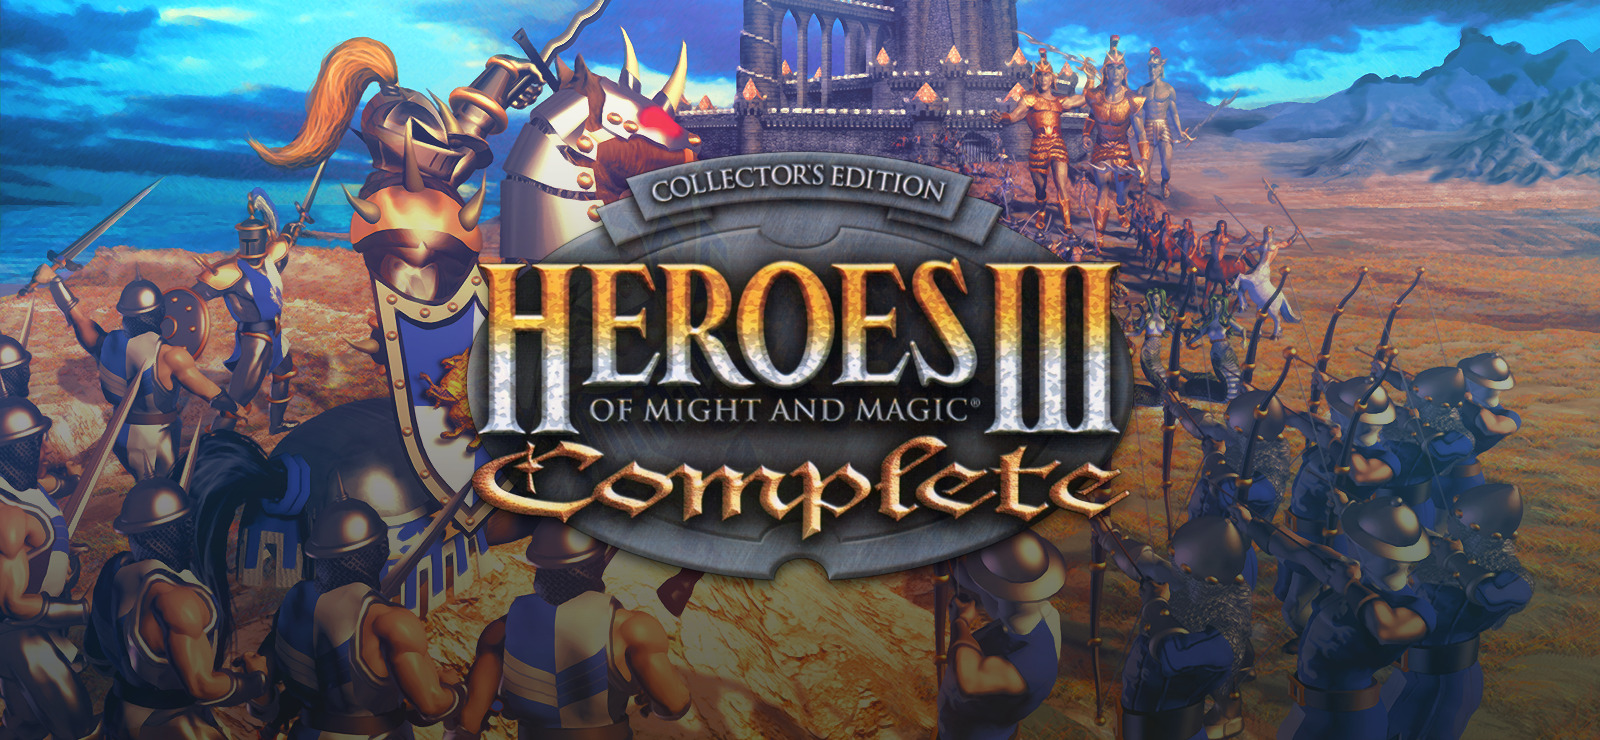 download heroes iii online